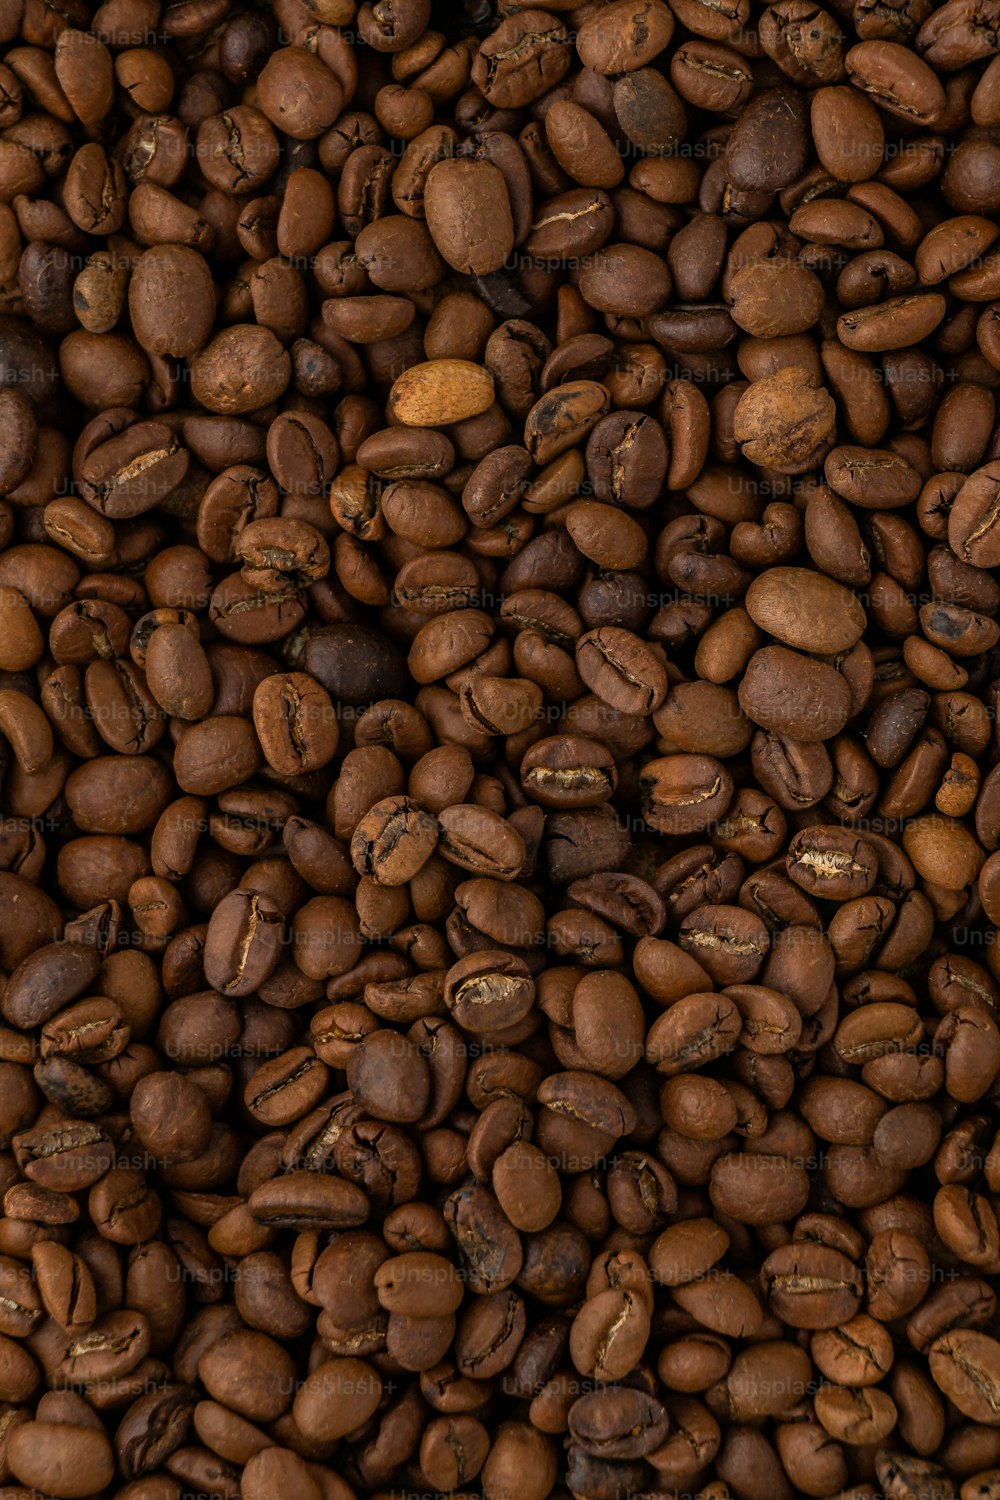 Ein großer Haufen Kaffeebohnen wird gezeigt